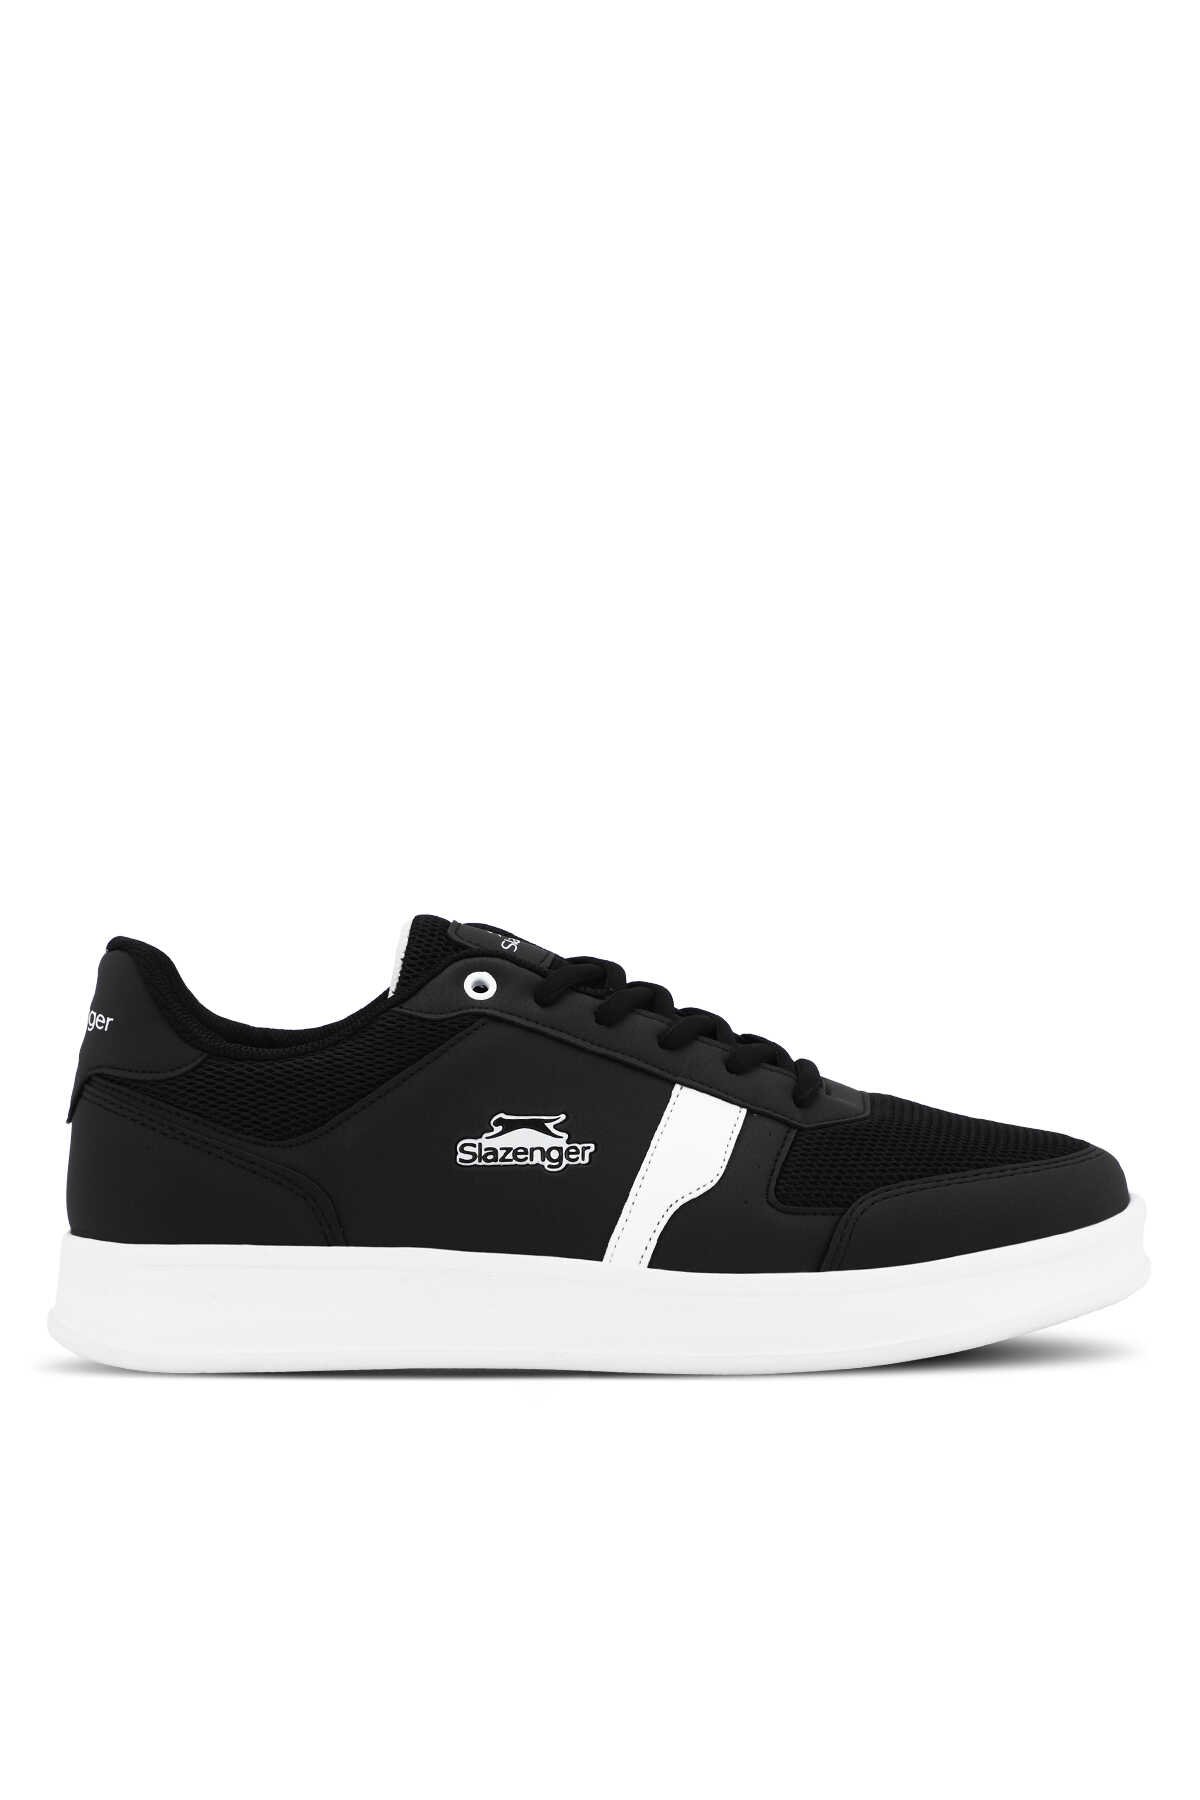 Slazenger - Slazenger ORVAL I Sneaker Erkek Ayakkabı Siyah / Beyaz